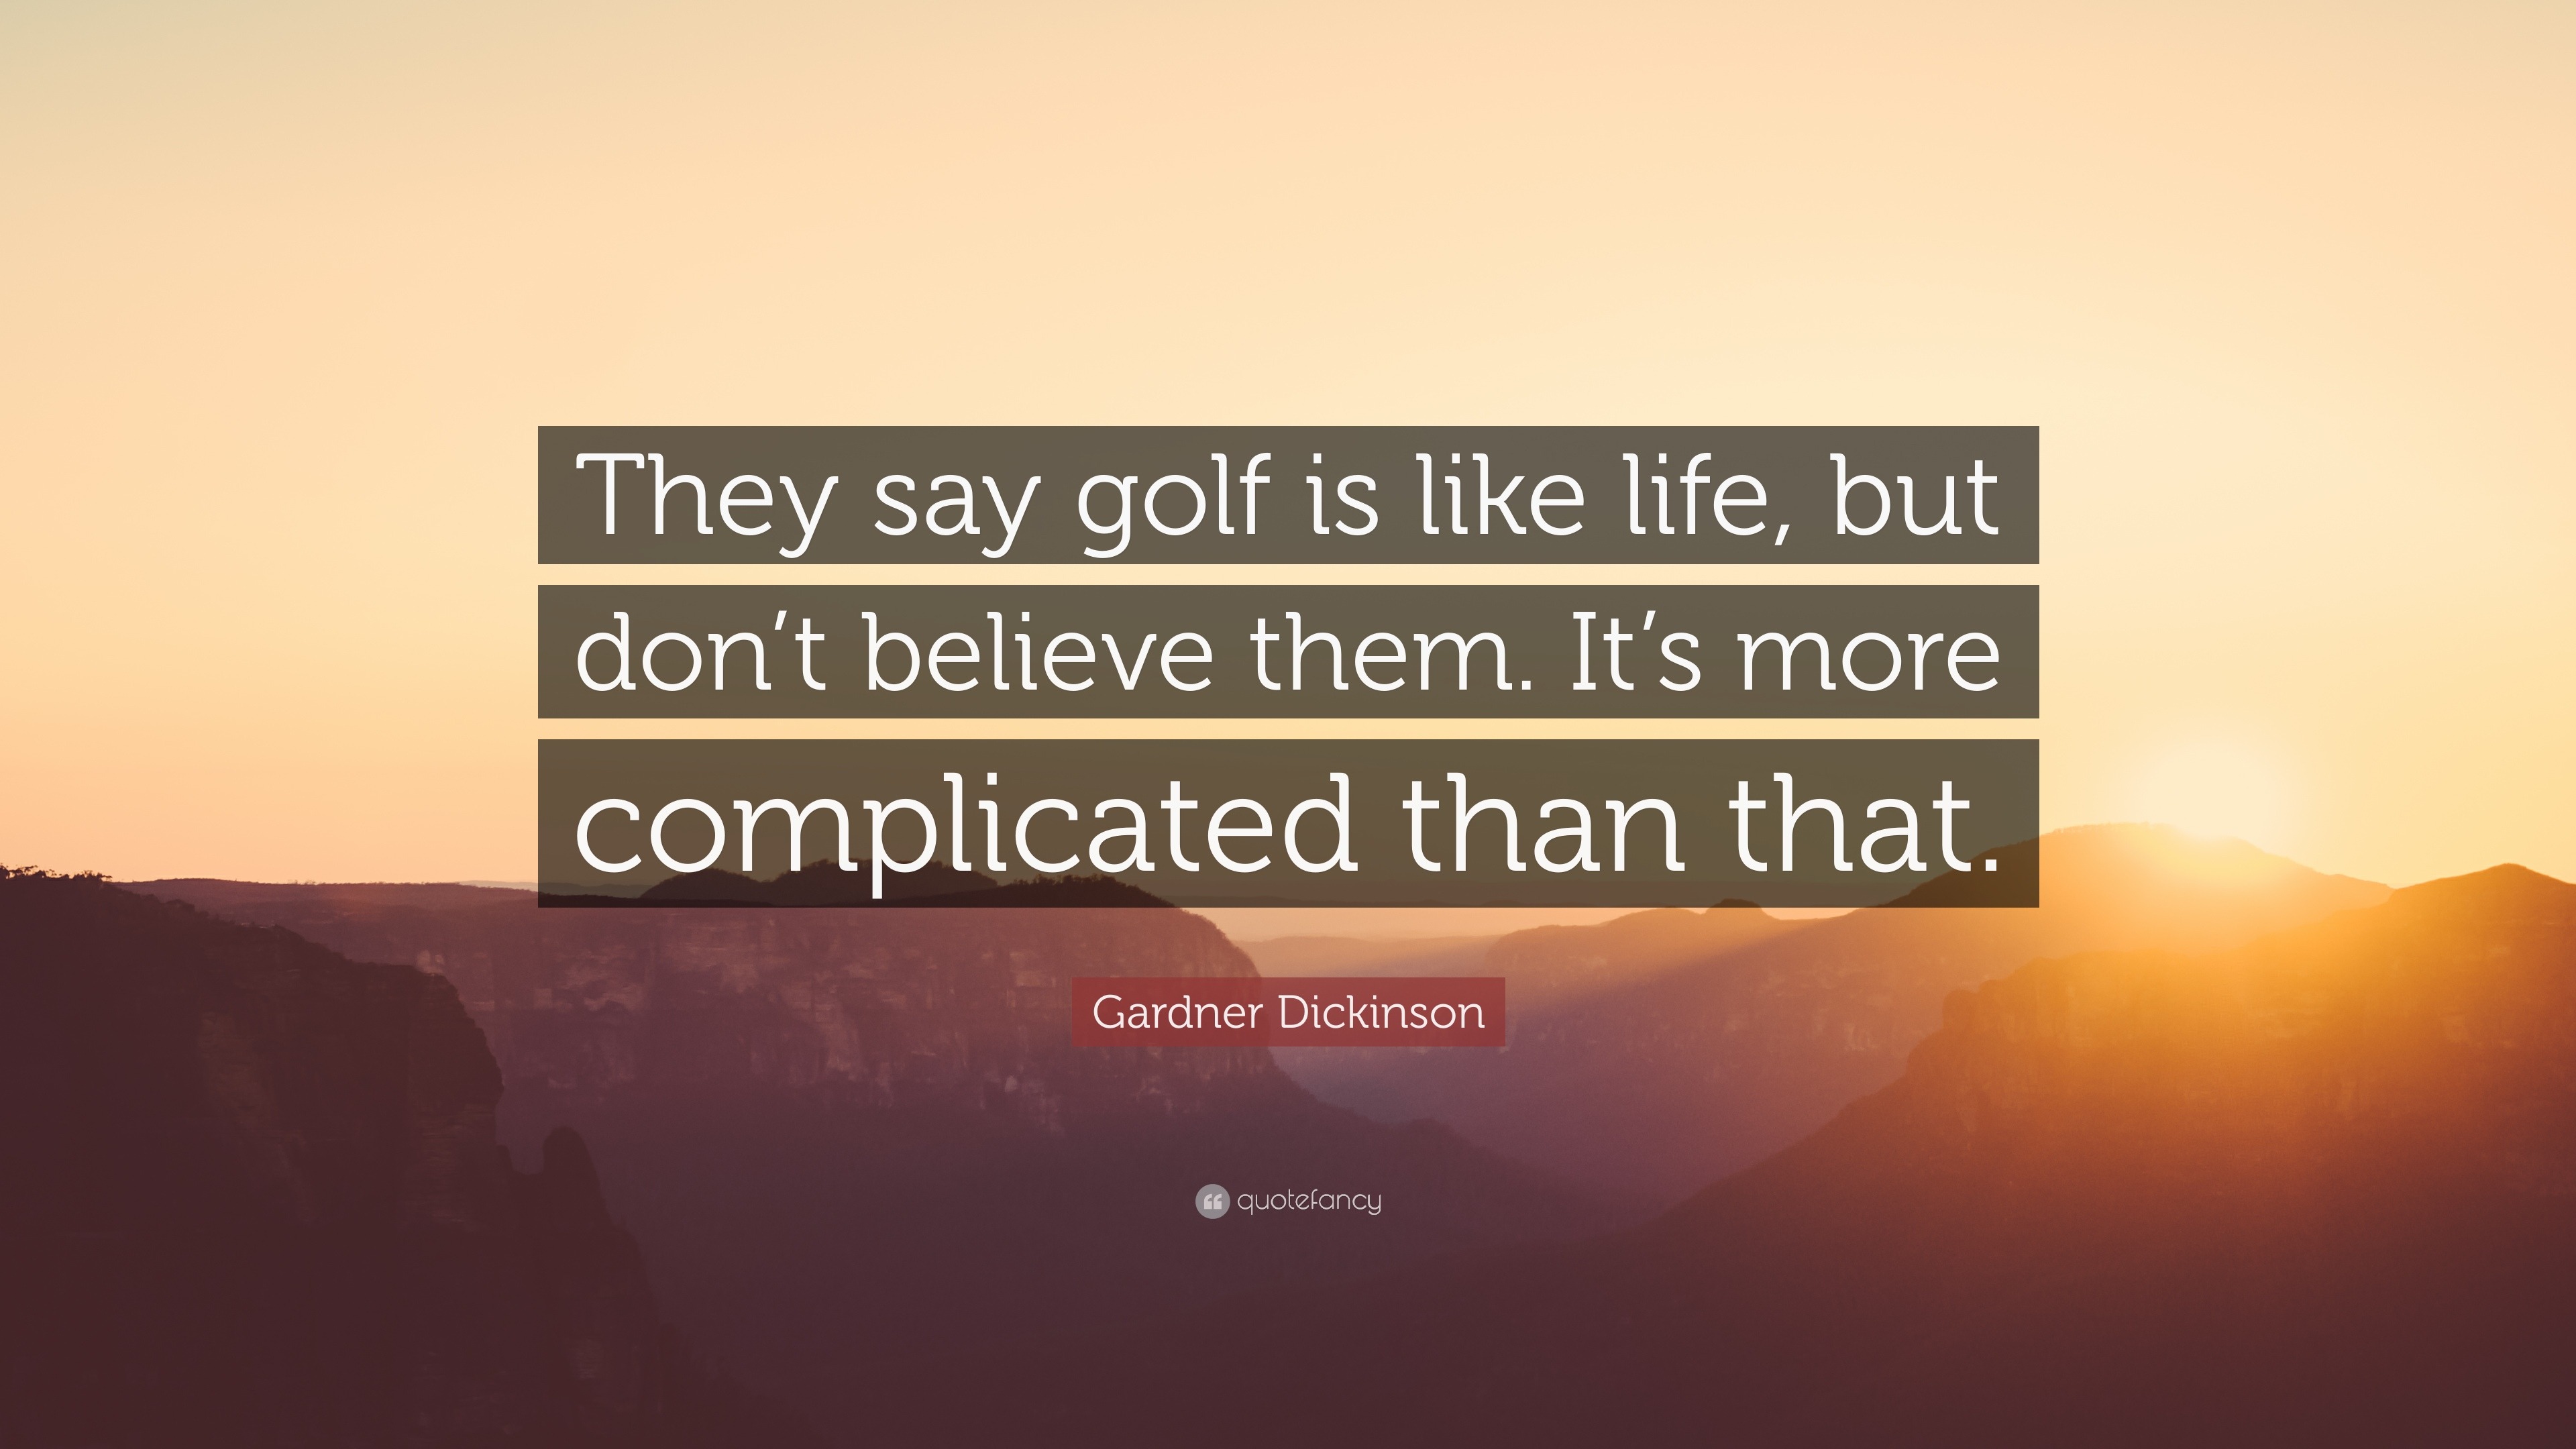 life is like golf, it's not easy but it's beautiful!⛳️ @djkhaled